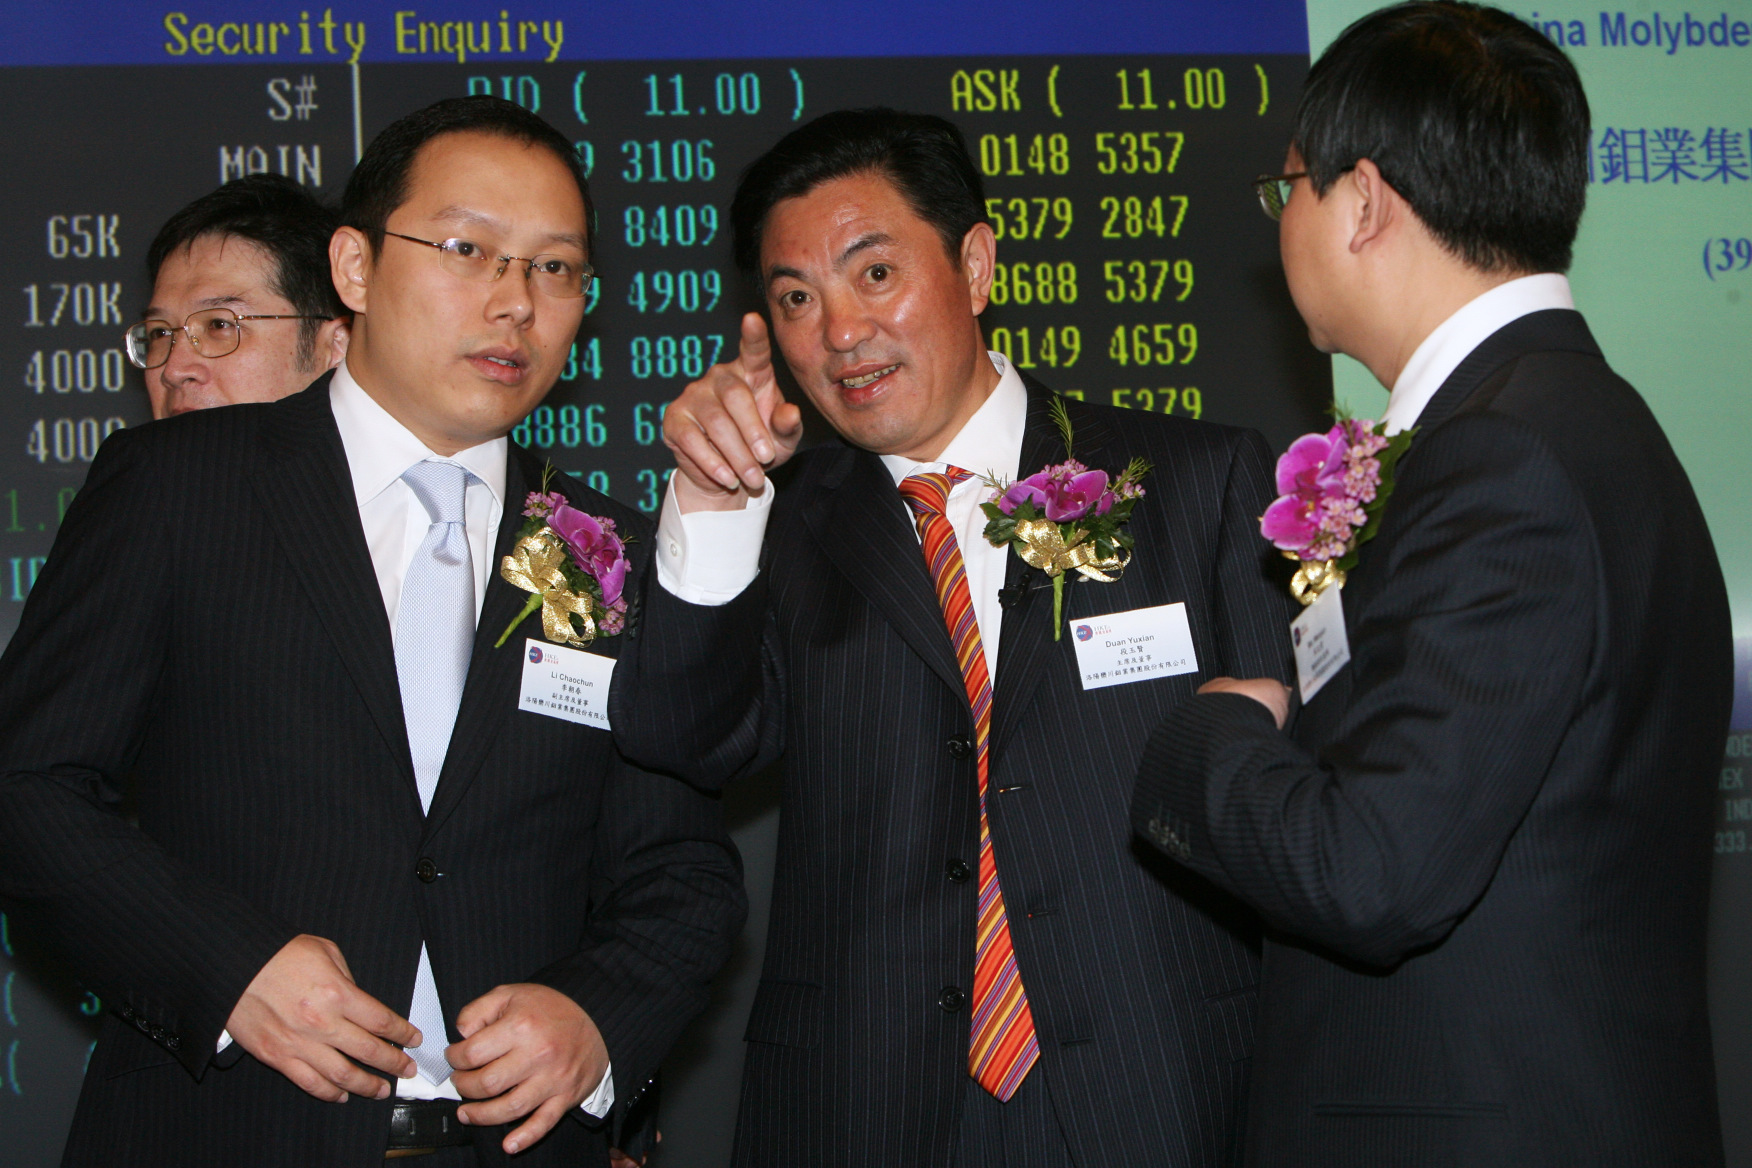 Li Chaochun, chairman of China Molybdenum. Photo: May Tse